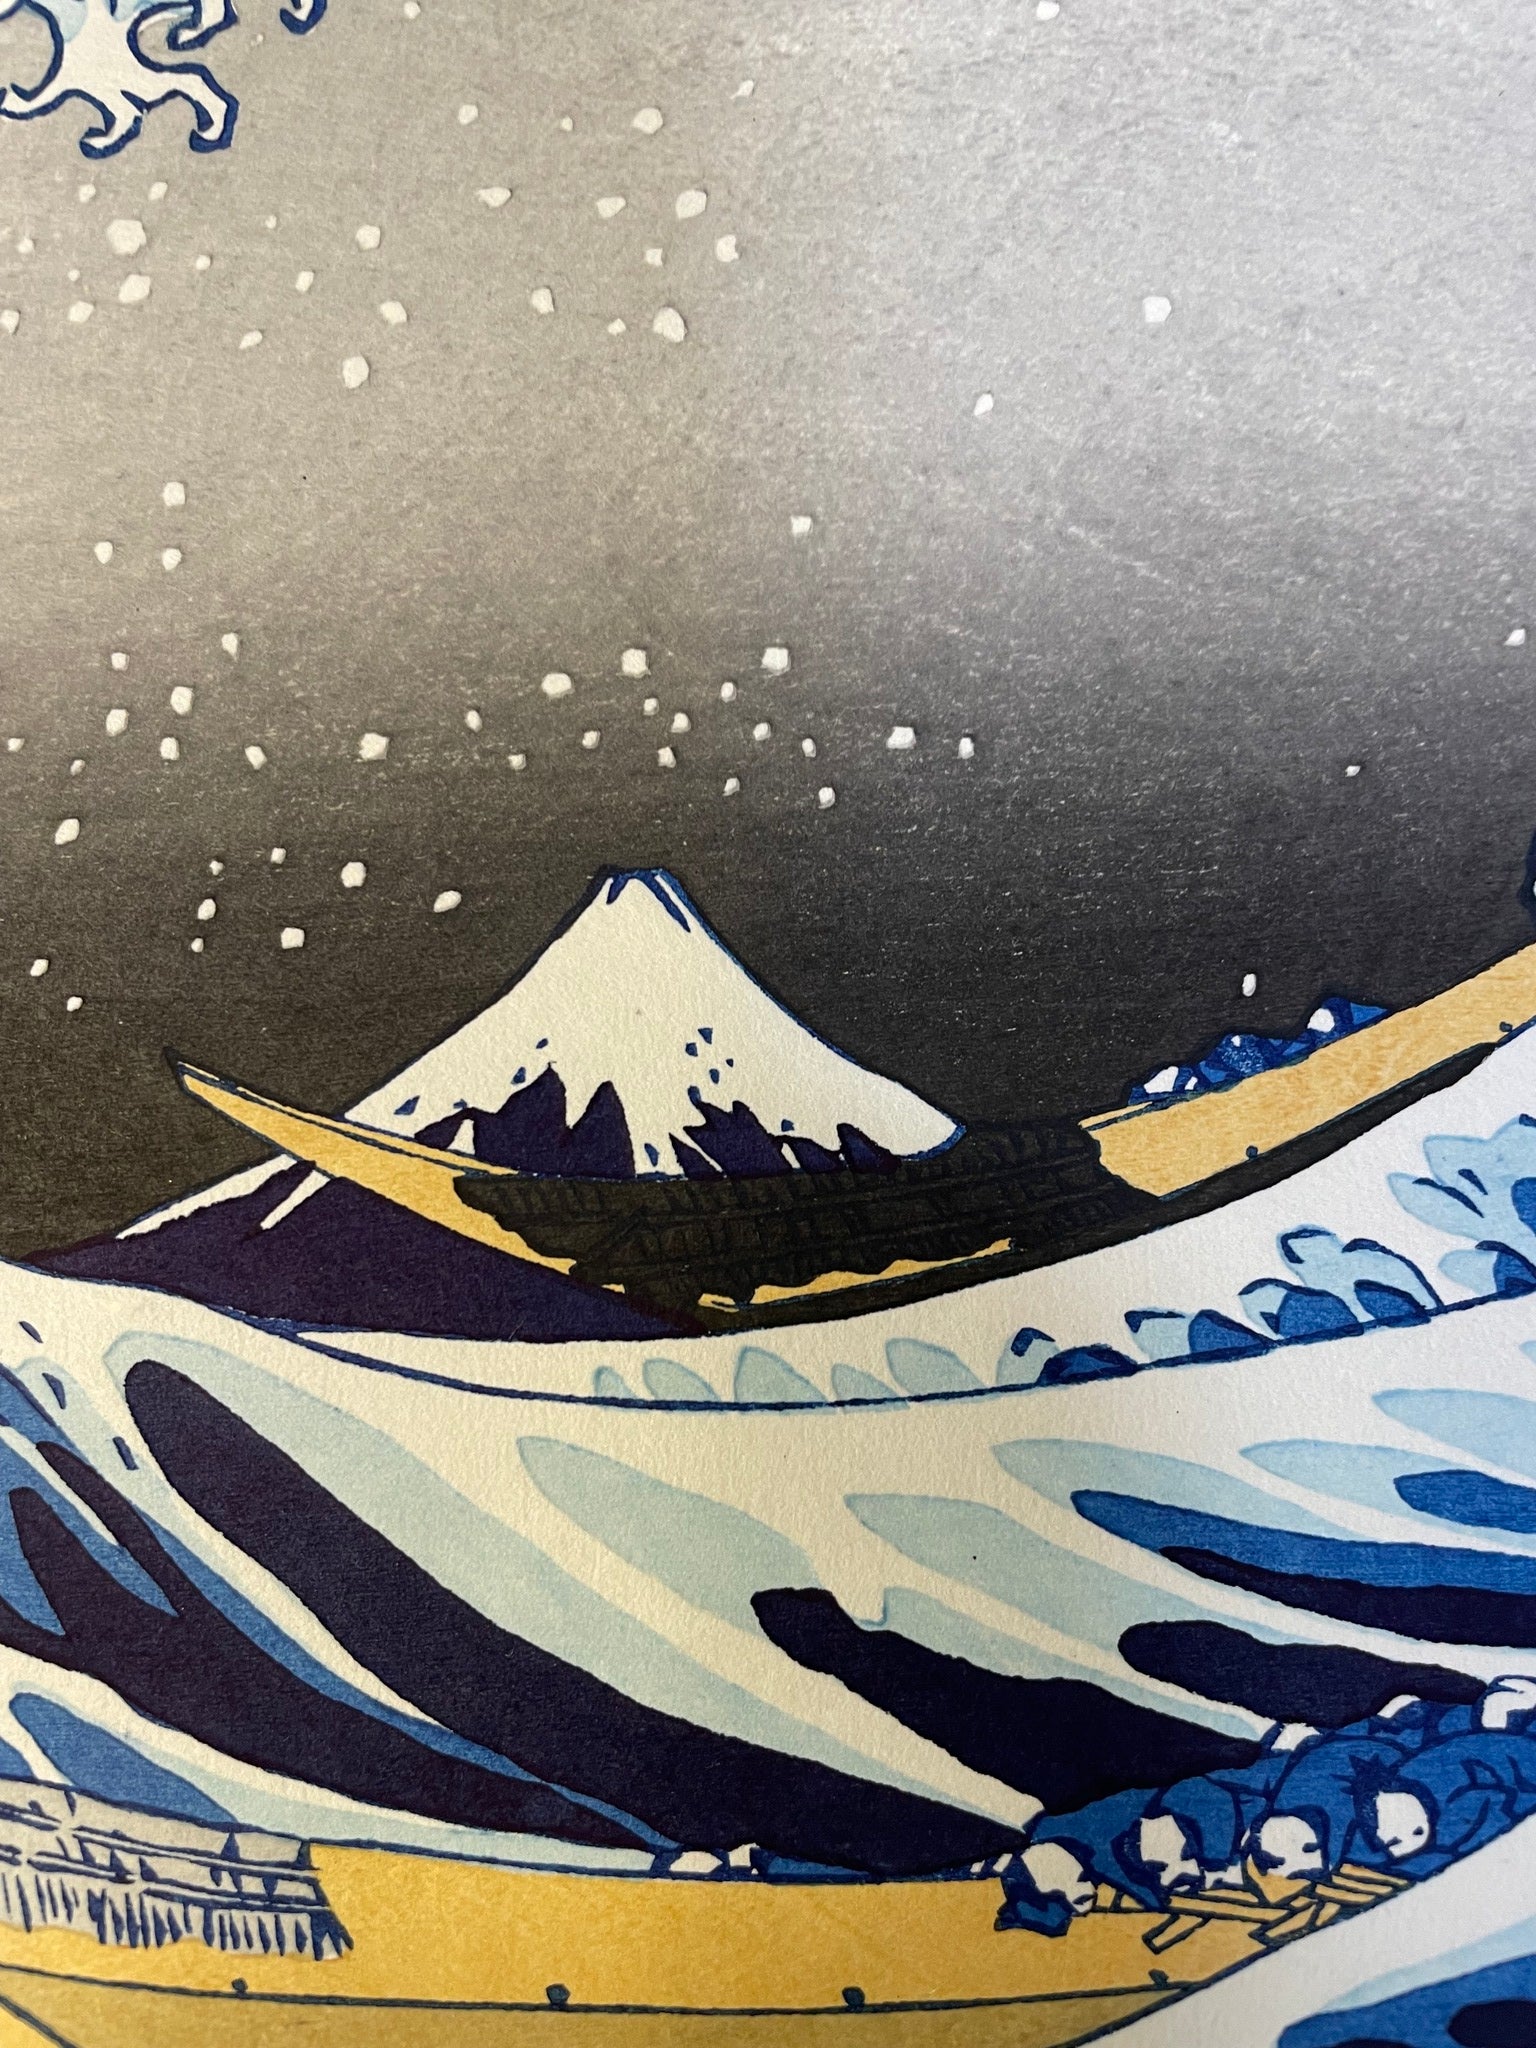 The Great Wave off Kanagawa (Printed by Nagao)